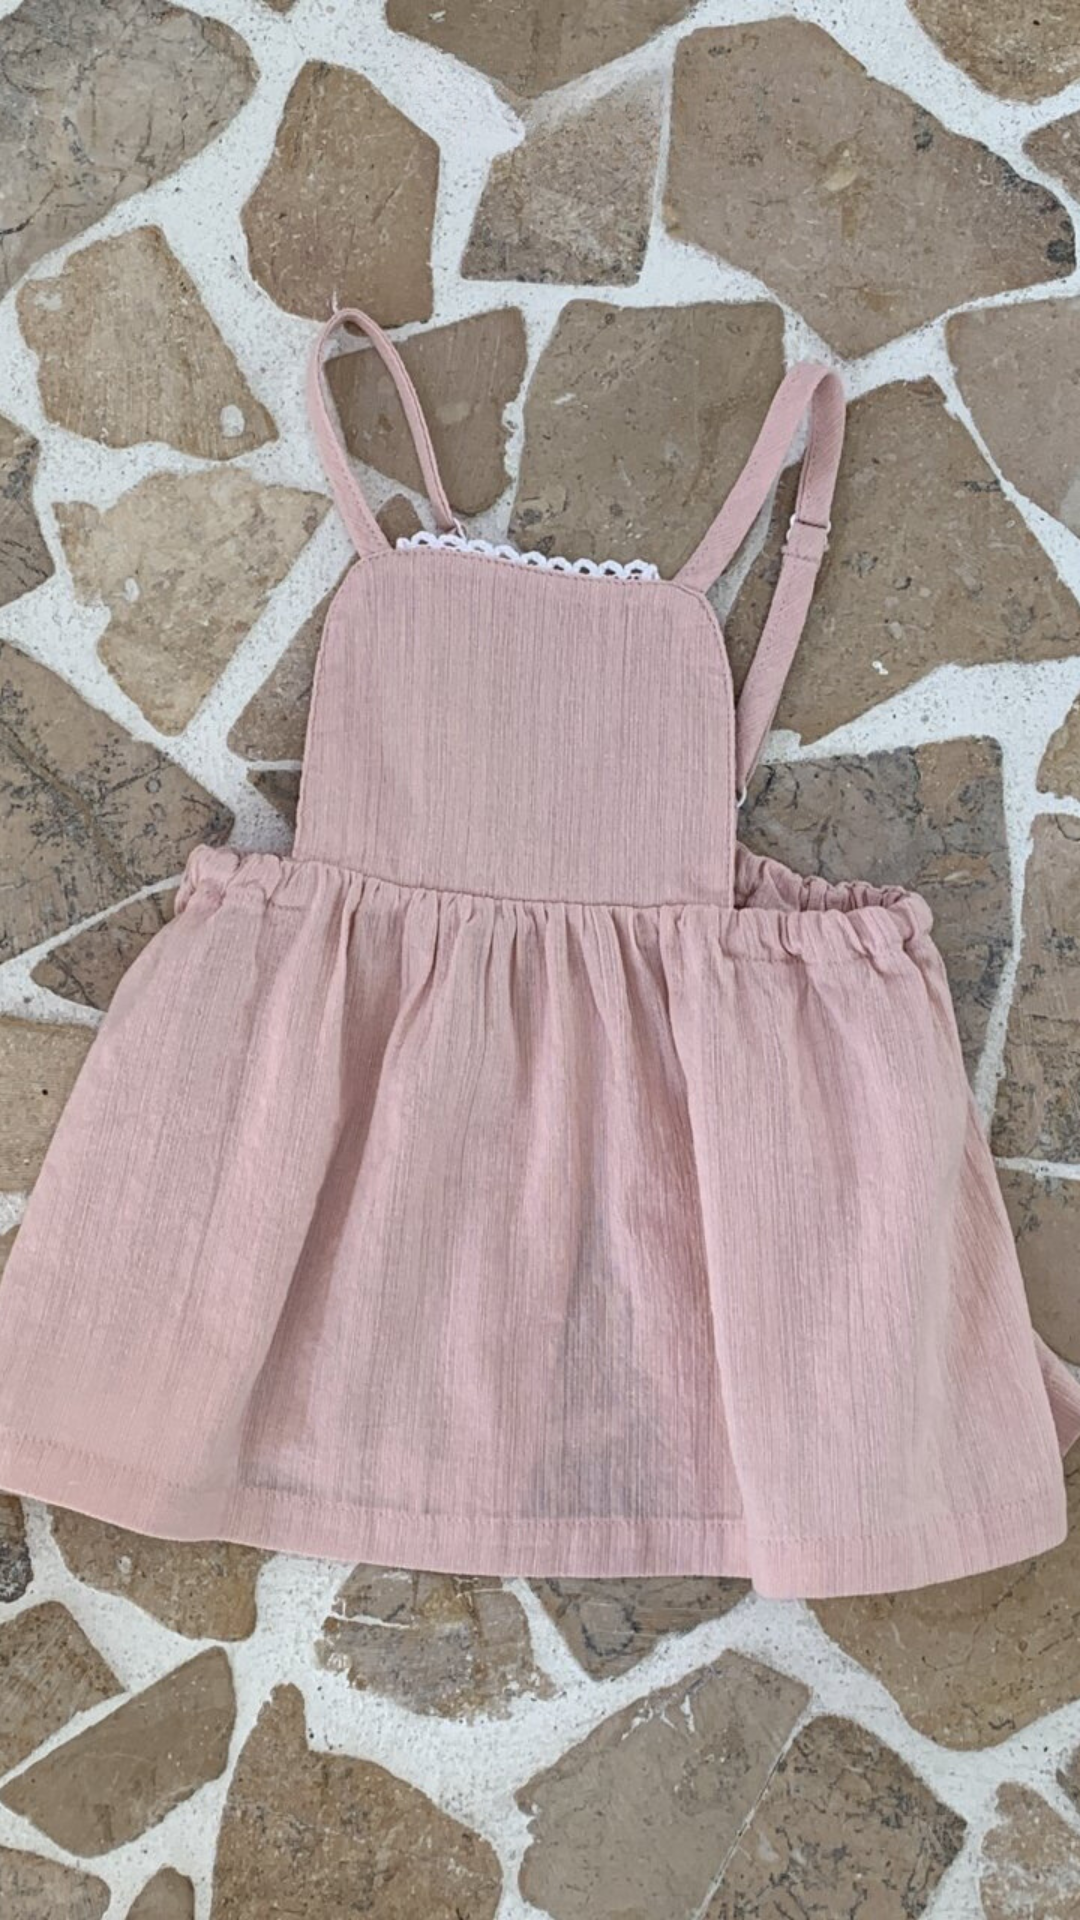 Ein rosafarbener Bebe Holic Lagenrock für Kleinkinder mit Spaghettiträgern und gerafftem Rock, präsentiert auf einem gemusterten Fliesenboden. Das Kleid hat einen zarten Spitzenbesatz über der Brust.